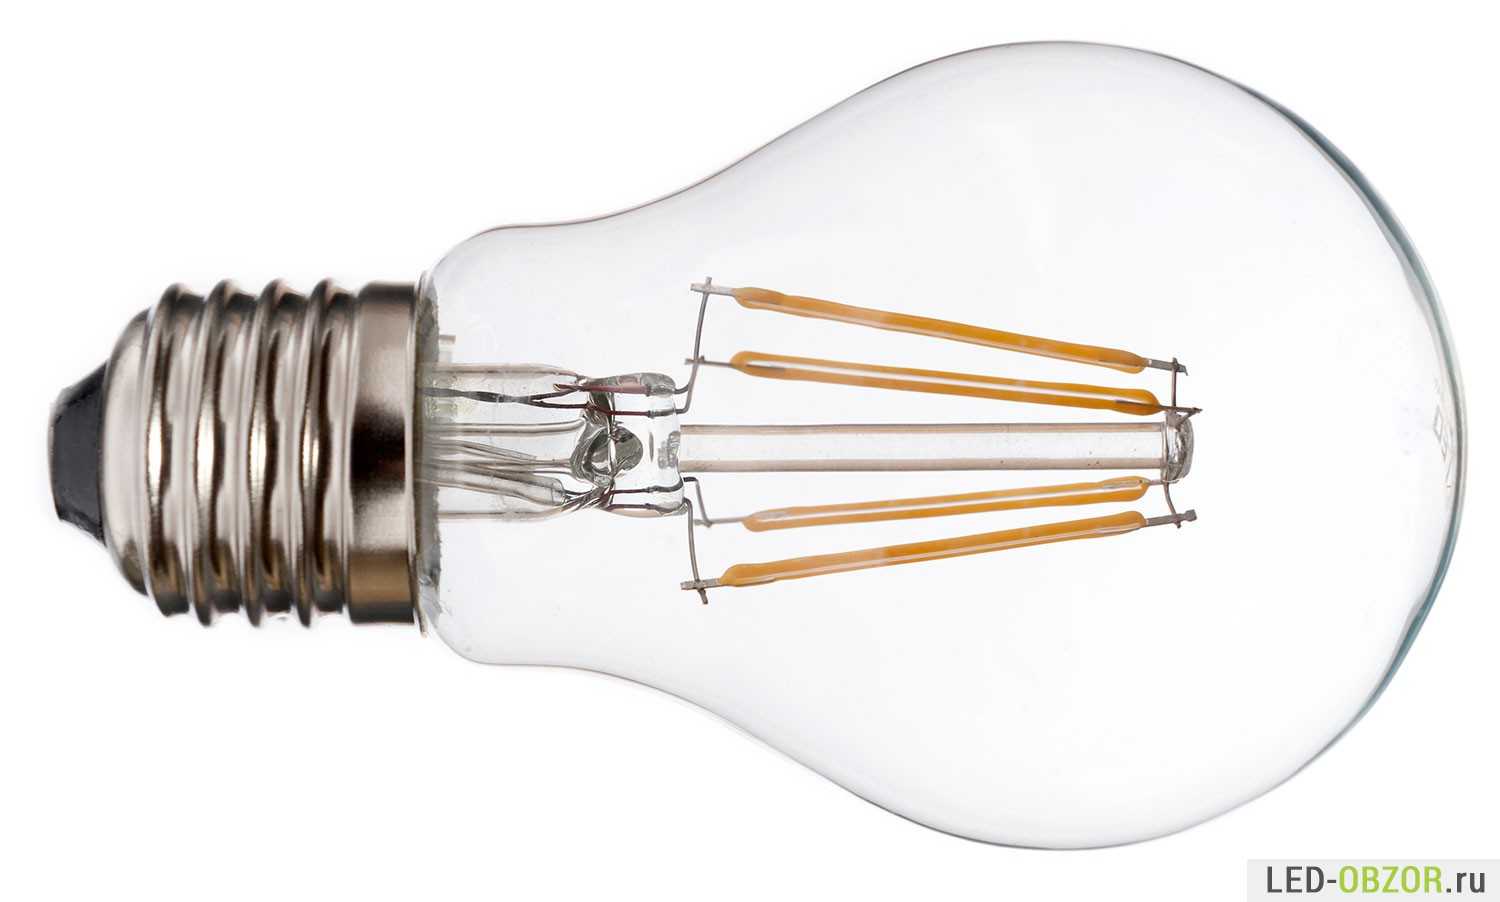 Обзор лучших LED-ламп с Алиэкспресс для вашего автомобиля, а также для освещения дома и улицы: недорогие и популярные модели по отзывам покупателей